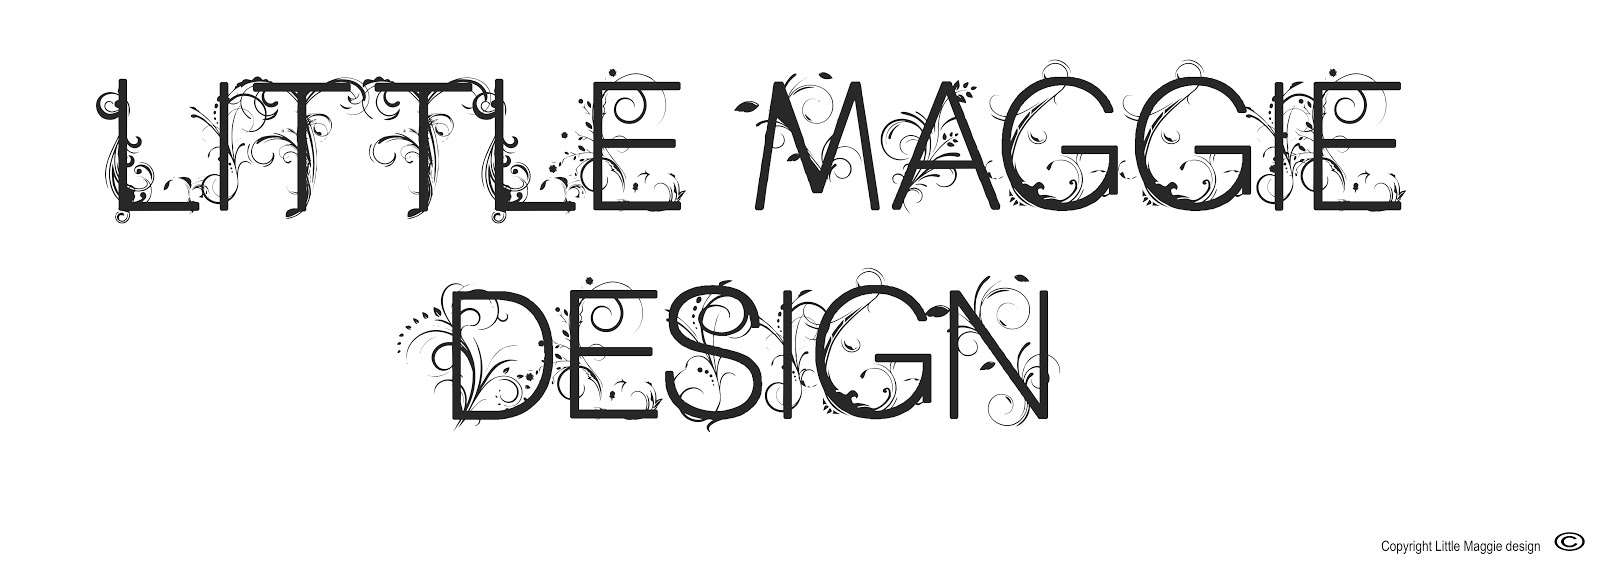 Little Maggie design